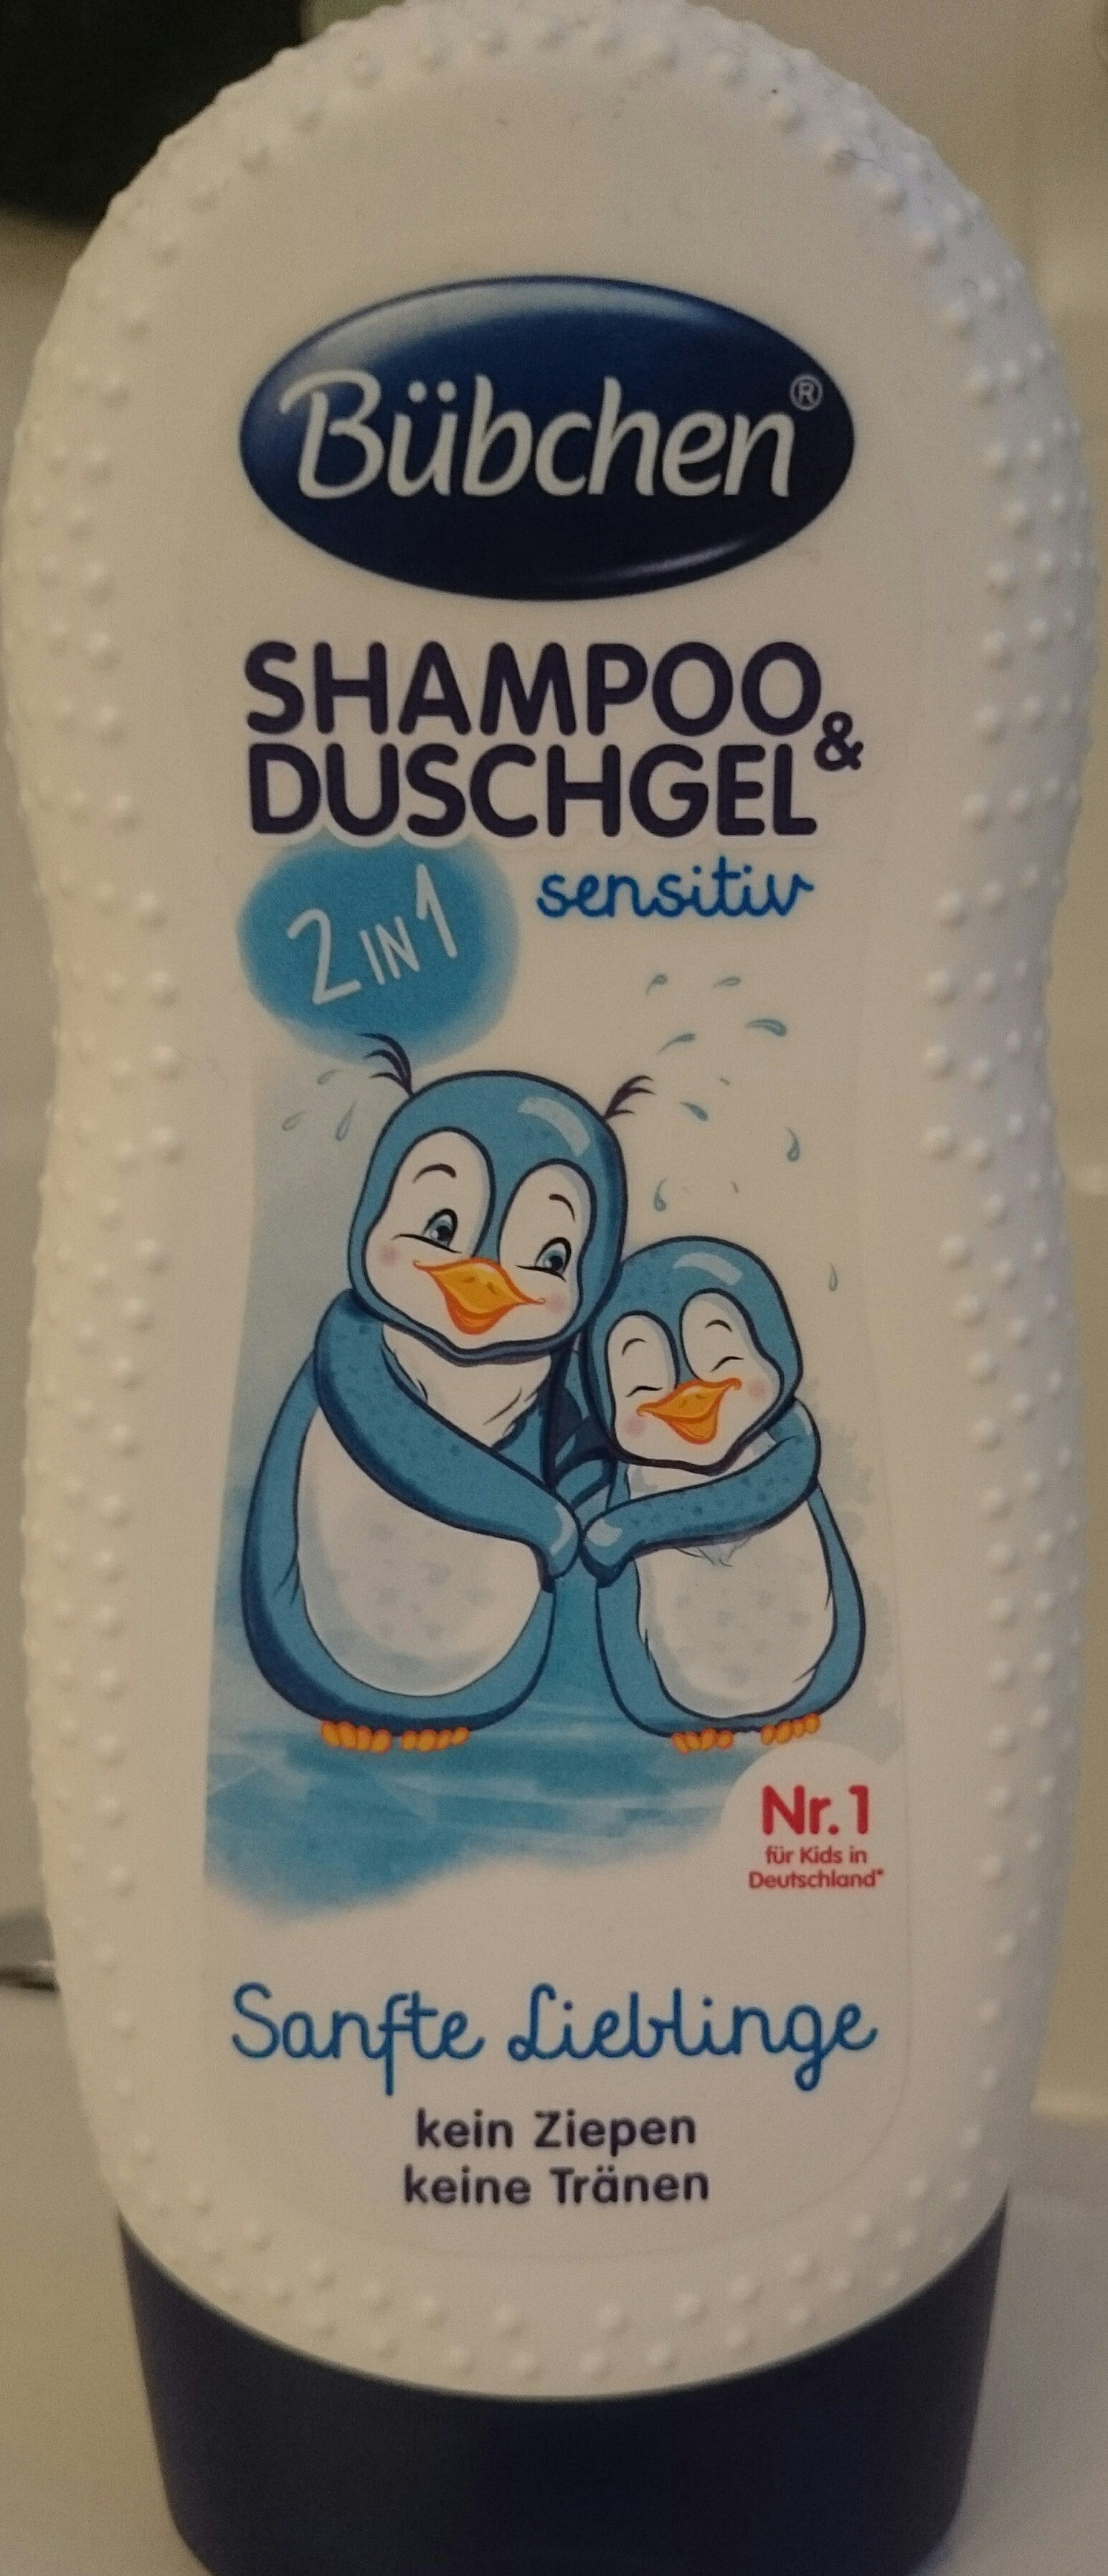 Sanfte Lieblinge, Shampoo Duschgel - Product - de